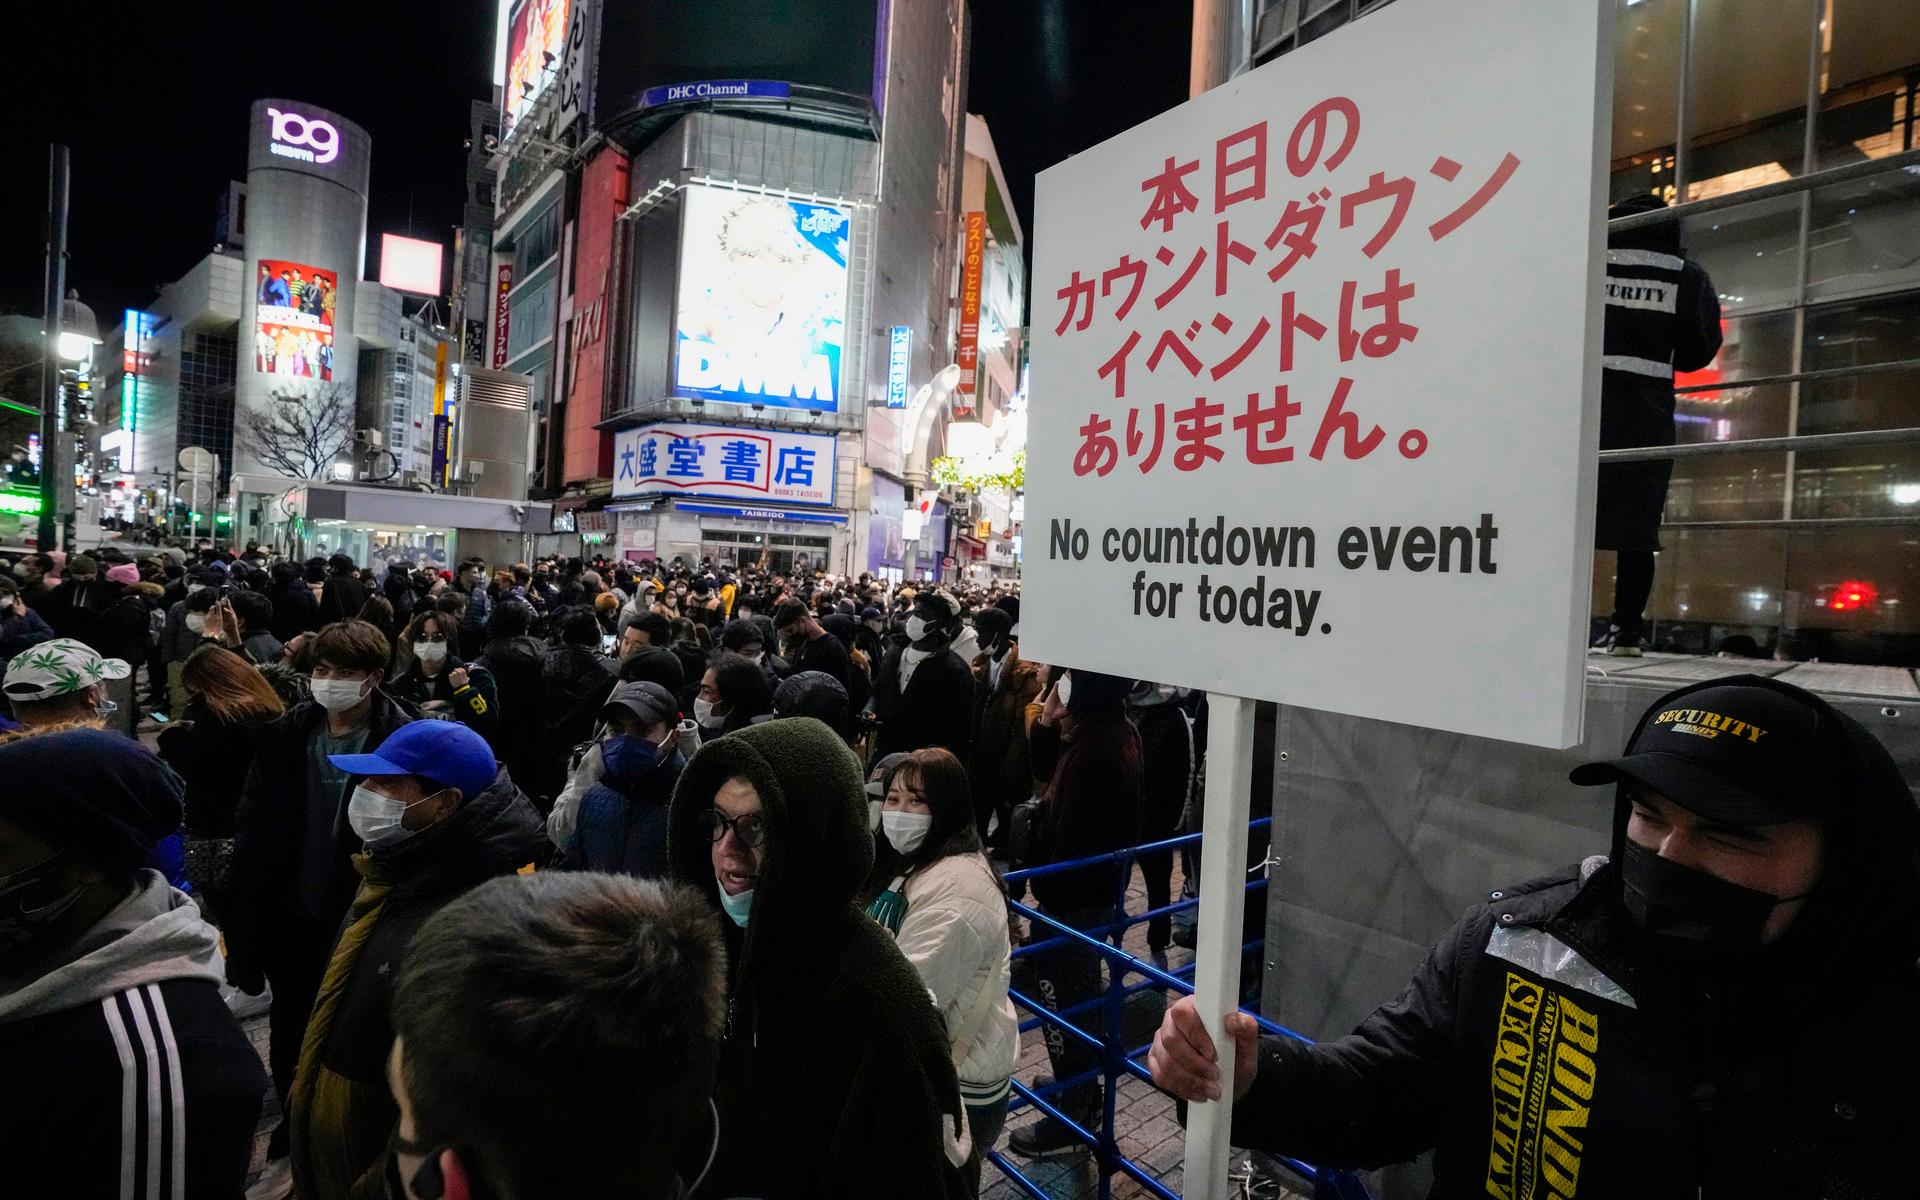 Tokyo-bor möts av en skylt som förklarar att det inte blir någon nedräkning vid det berömda övergångsstället Shibuya i år.